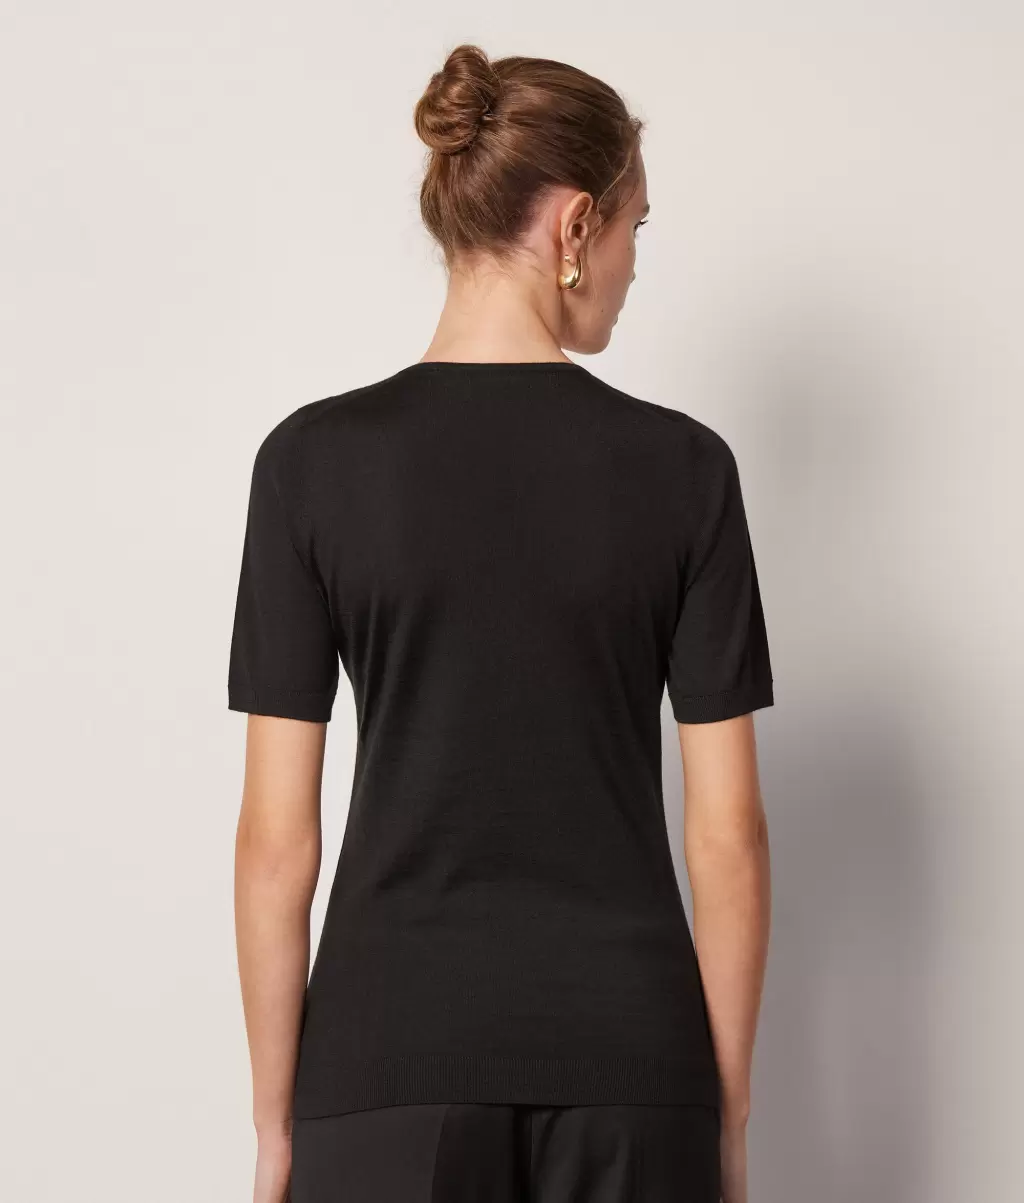 Black Kobieta Topy I T-Shirty Pulower Z Krótkim Rękawem Z Kaszmiru Ultrafine Falconeri - 2